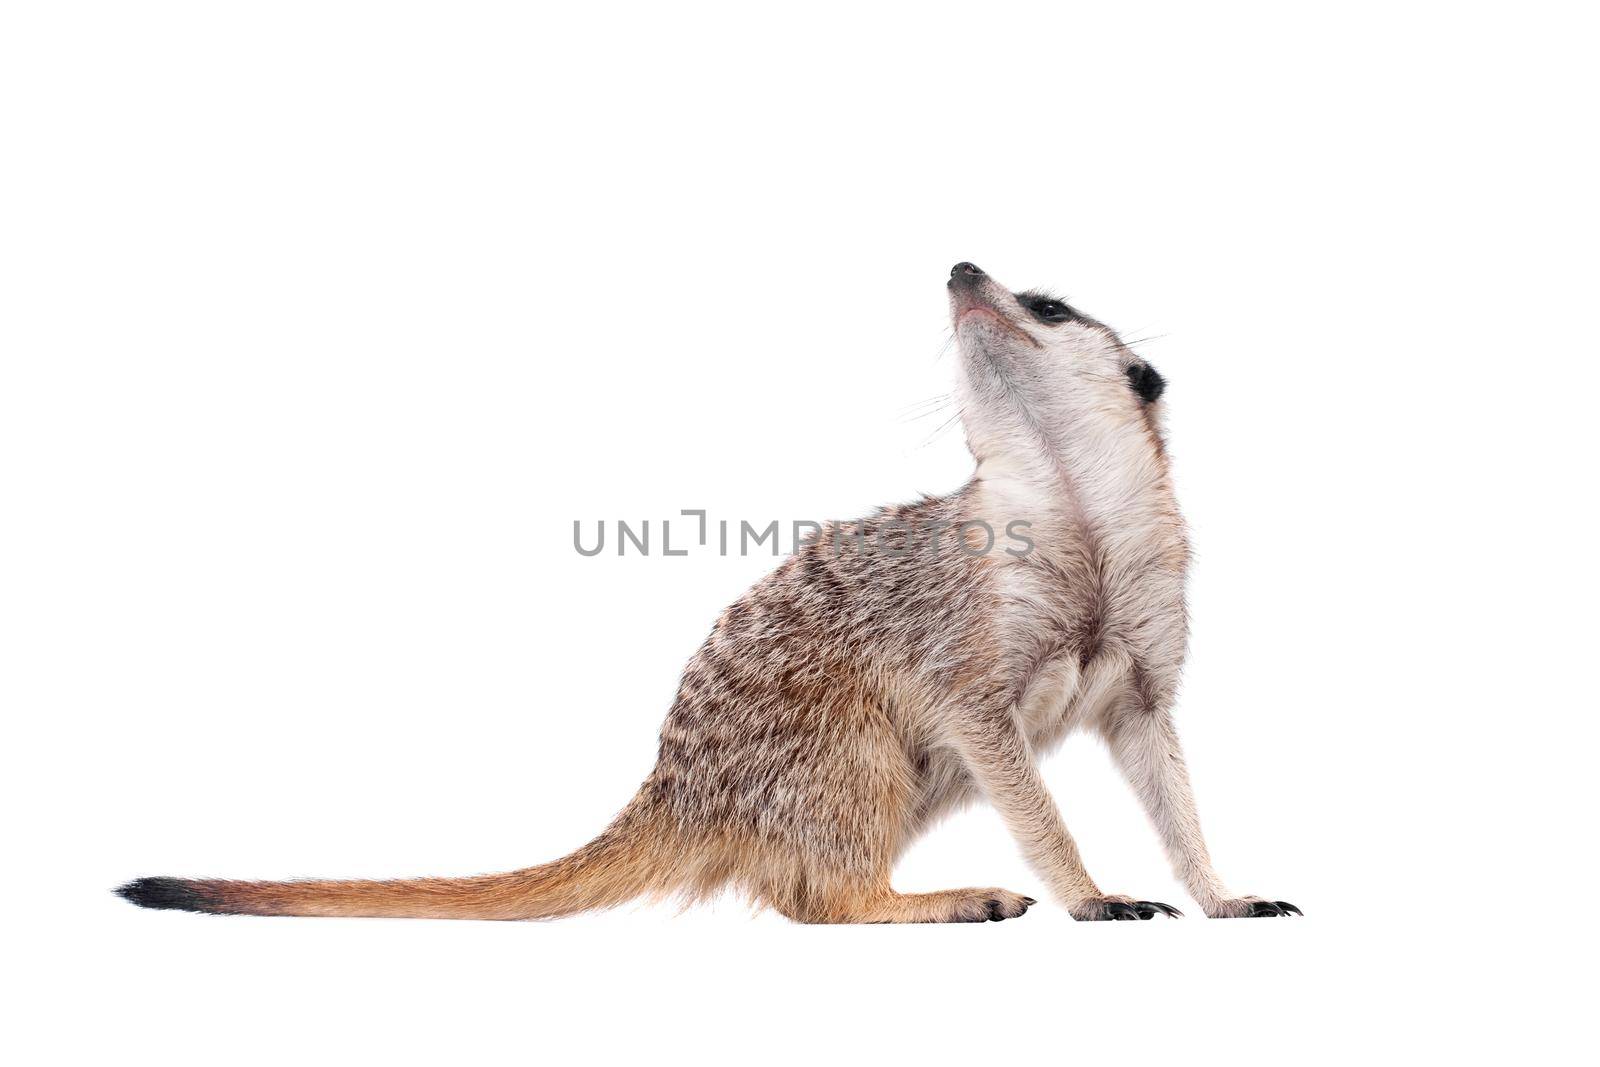 The meerkat or suricate, Suricata suricatta, isolated on white